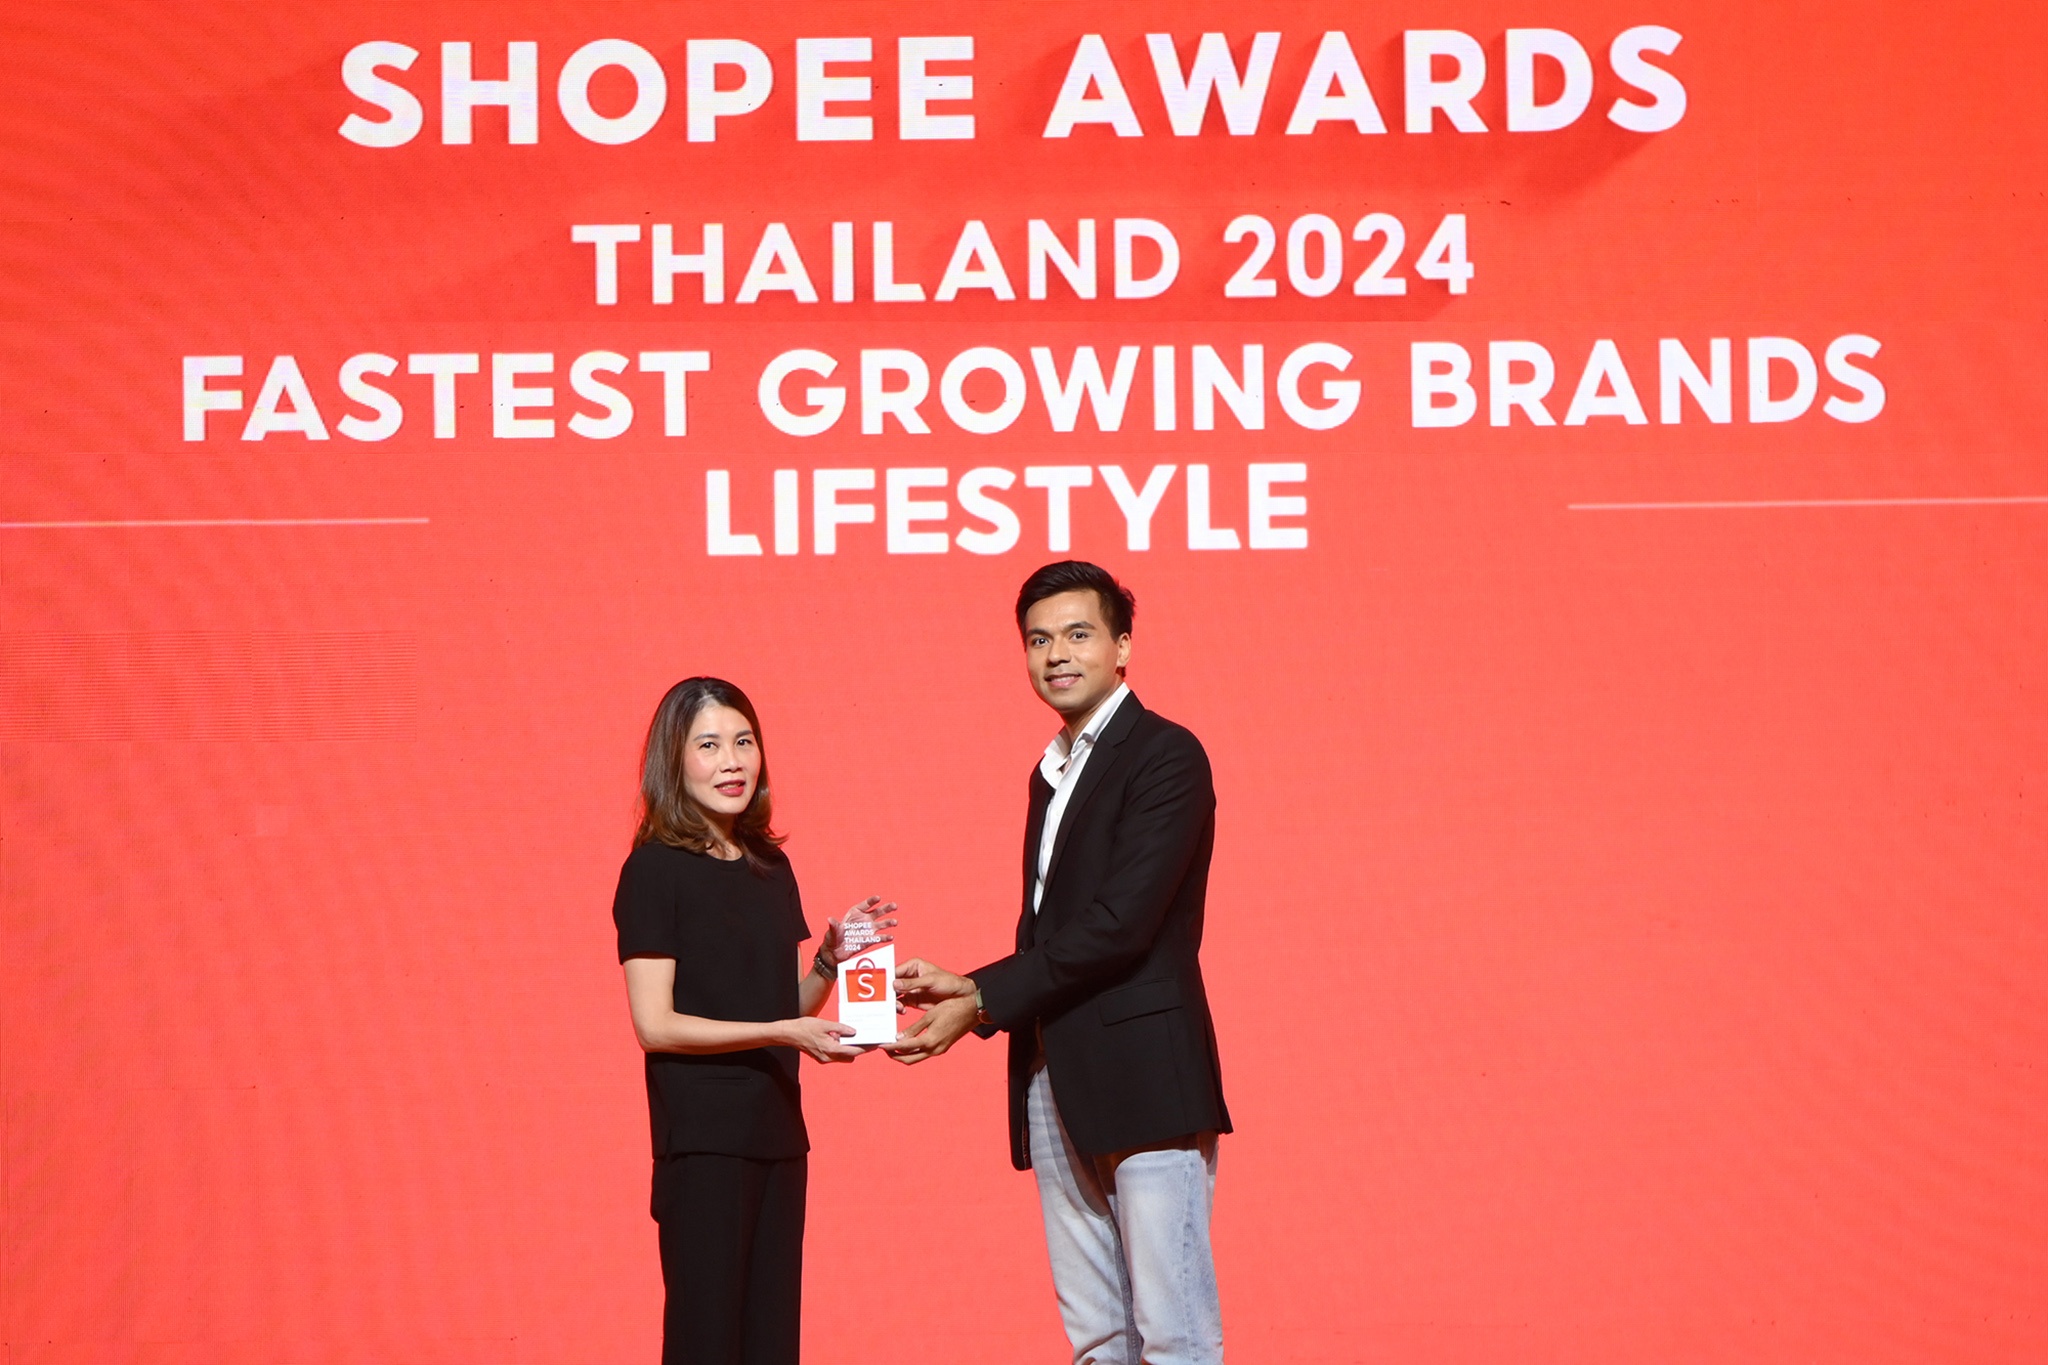 โฮมโปร ตอกย้ำผู้นำค้าปลีกฯ เรื่องบ้าน  คว้ารางวัล “แบรนด์ผู้ขายที่มียอดขายเติบโตเร็วสุด อันดับ 1” ภายในงาน  ‘Shopee Awards Thailand 2024’